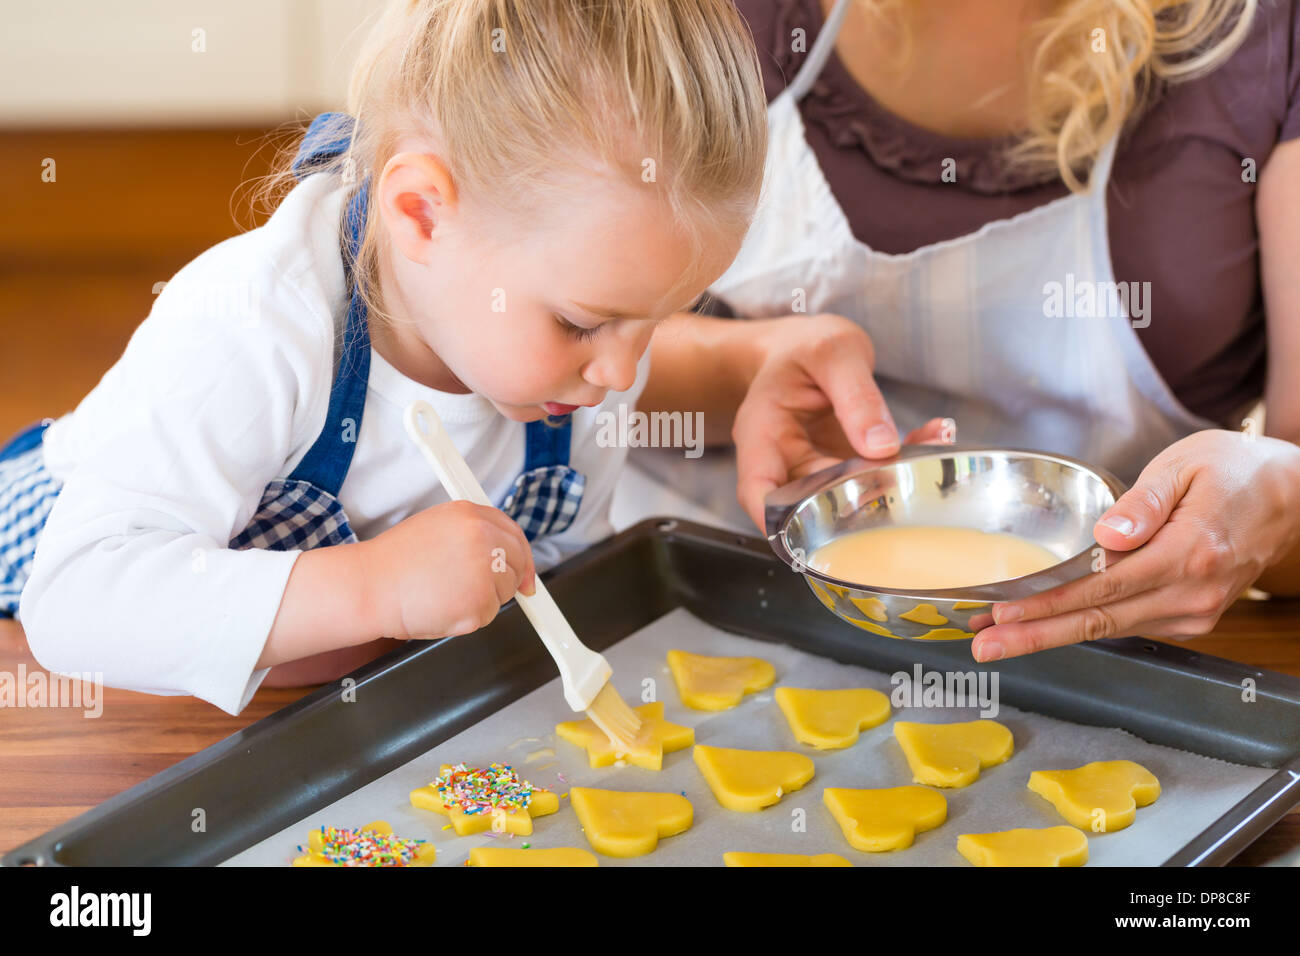 La cuisson avec la famille - Mère et fille coat self made cookies à l'aide d'un pinceau Banque D'Images